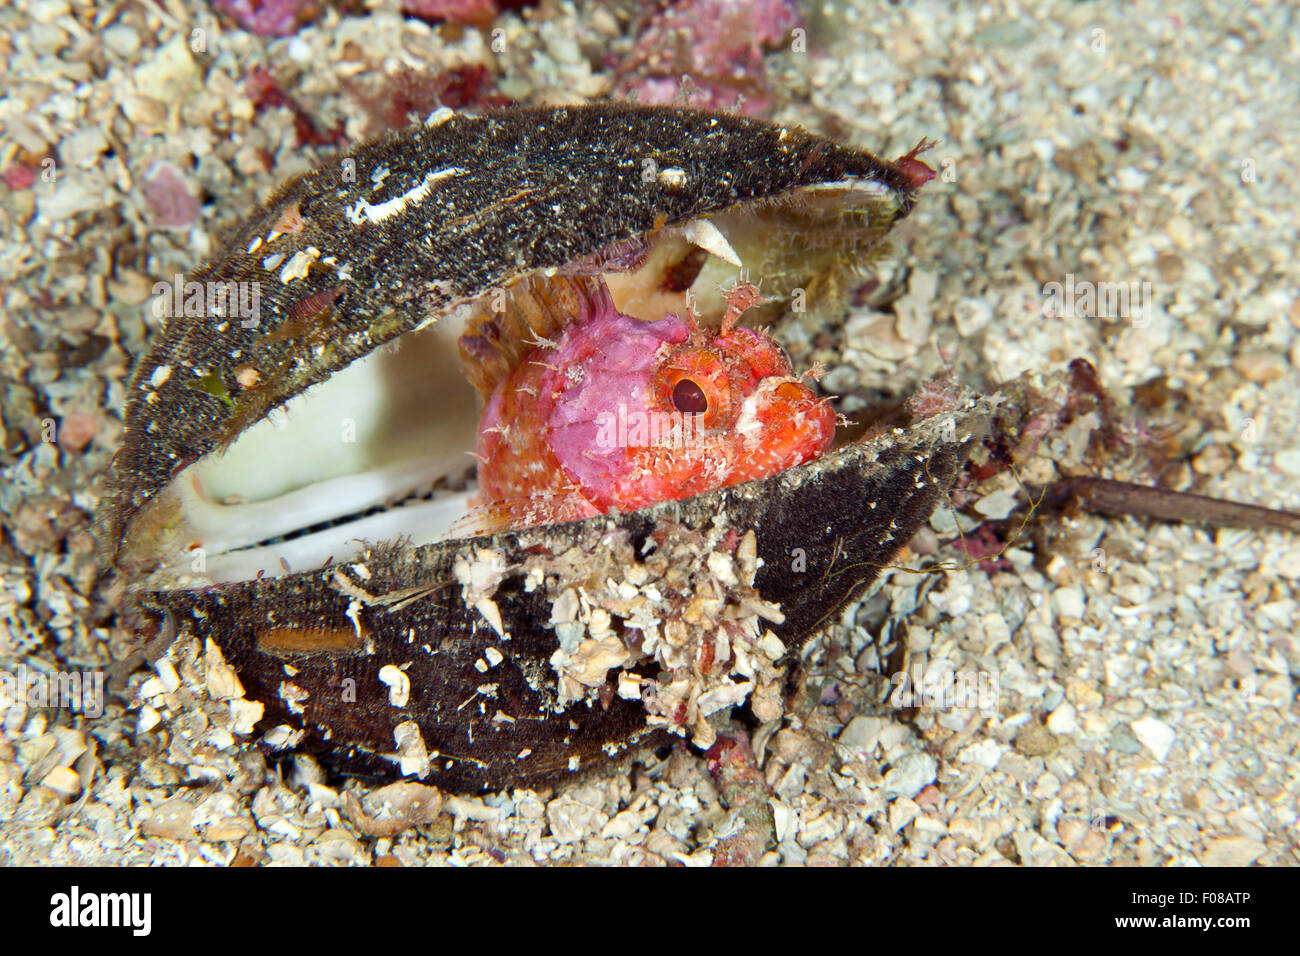 Rockfish hiding in Shell, Scorpaena notata, Ponza, Italy Stock Photo